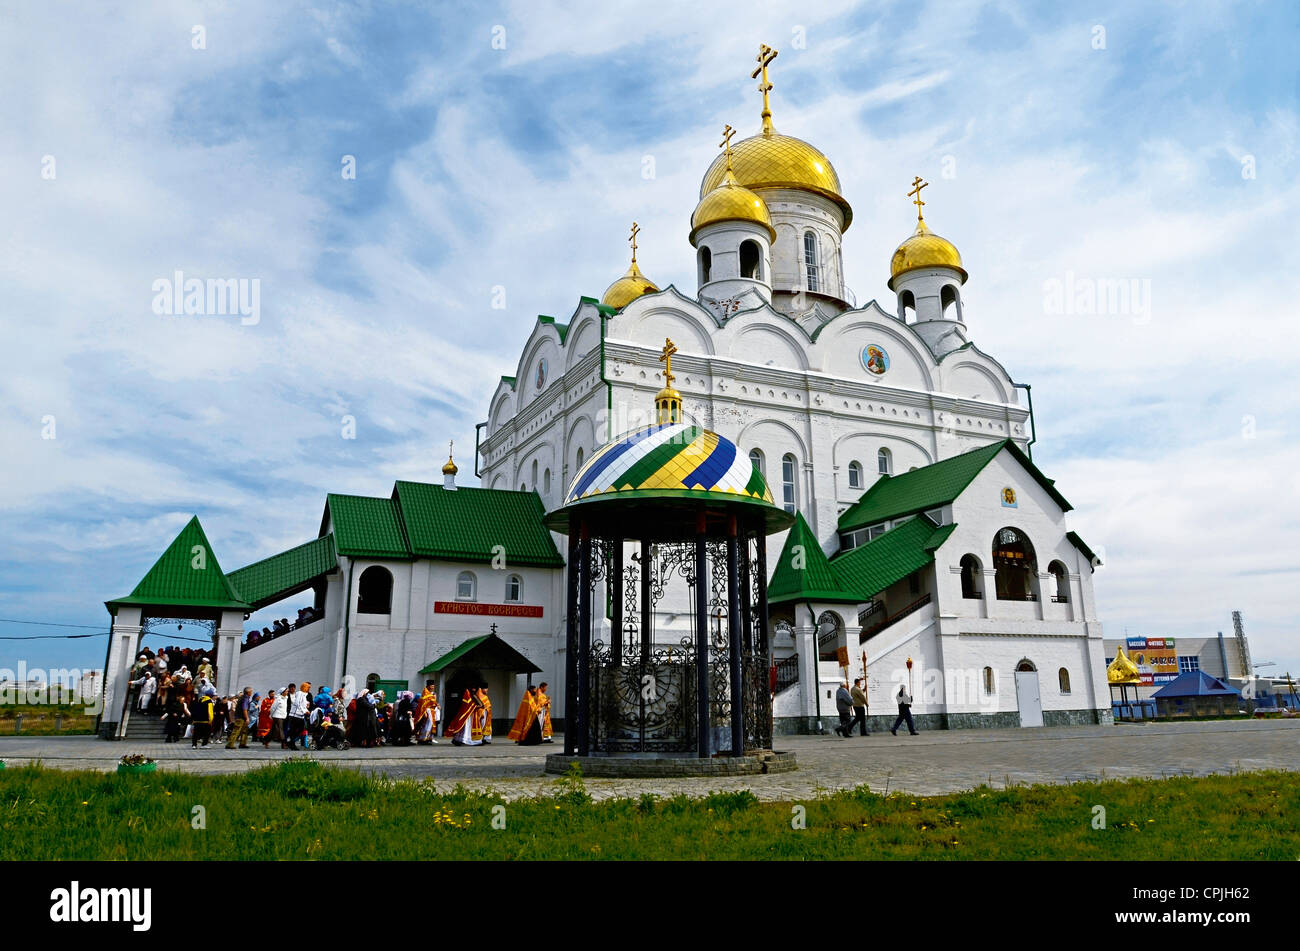 La Cathédrale de St John the Divine sur Shumakov Street Moscow l'Altaï Sibérie Russie Cathédrale maison de vacances Banque D'Images